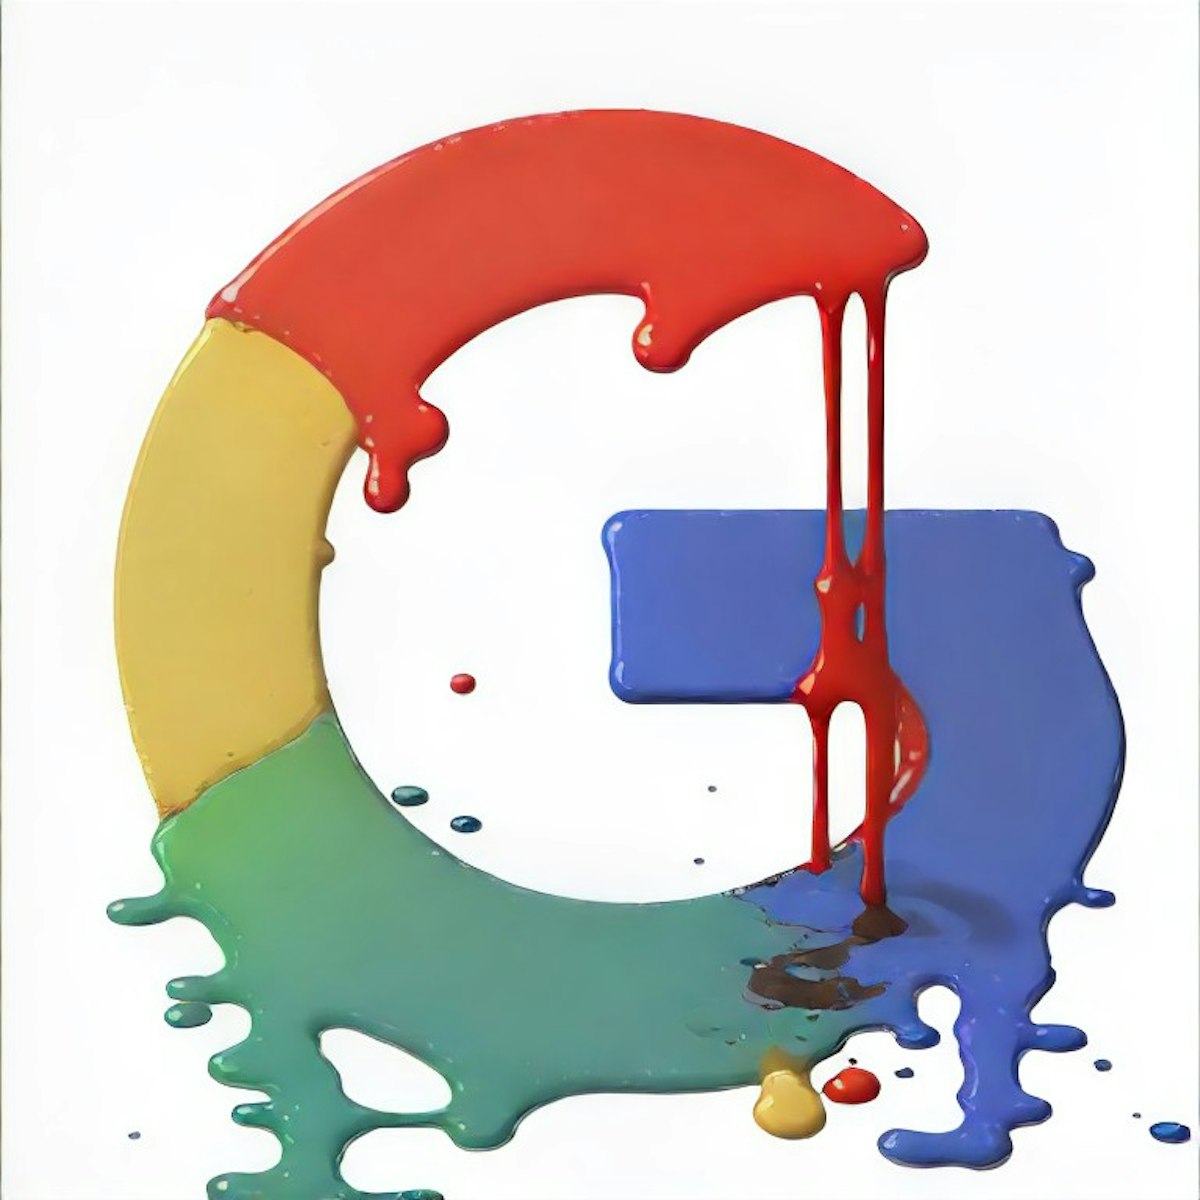 featured image - Por qué Google apesta: pero estamos atrapados con ellos (por ahora)